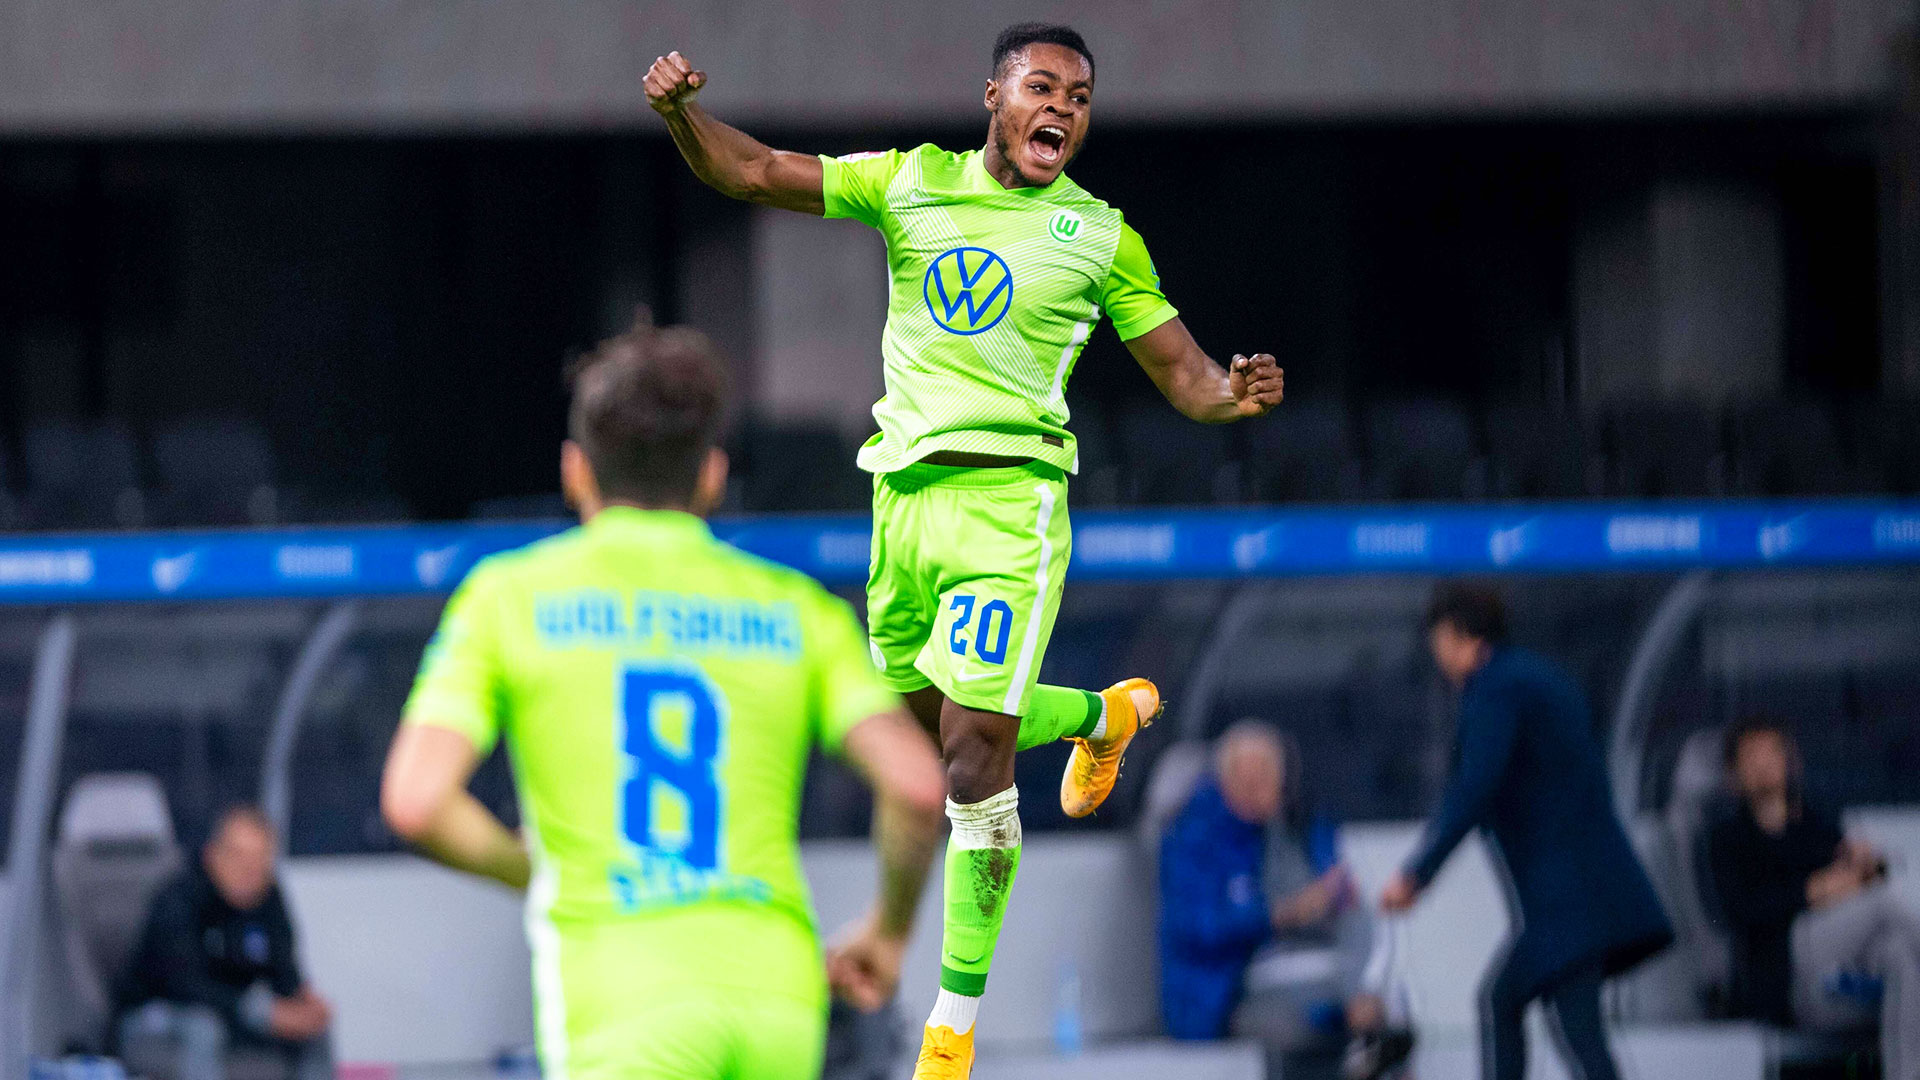 Baku Ridle springt nach dem ersten Tor für den VfL Wolfsburg in die Luft und ballt die Faust.